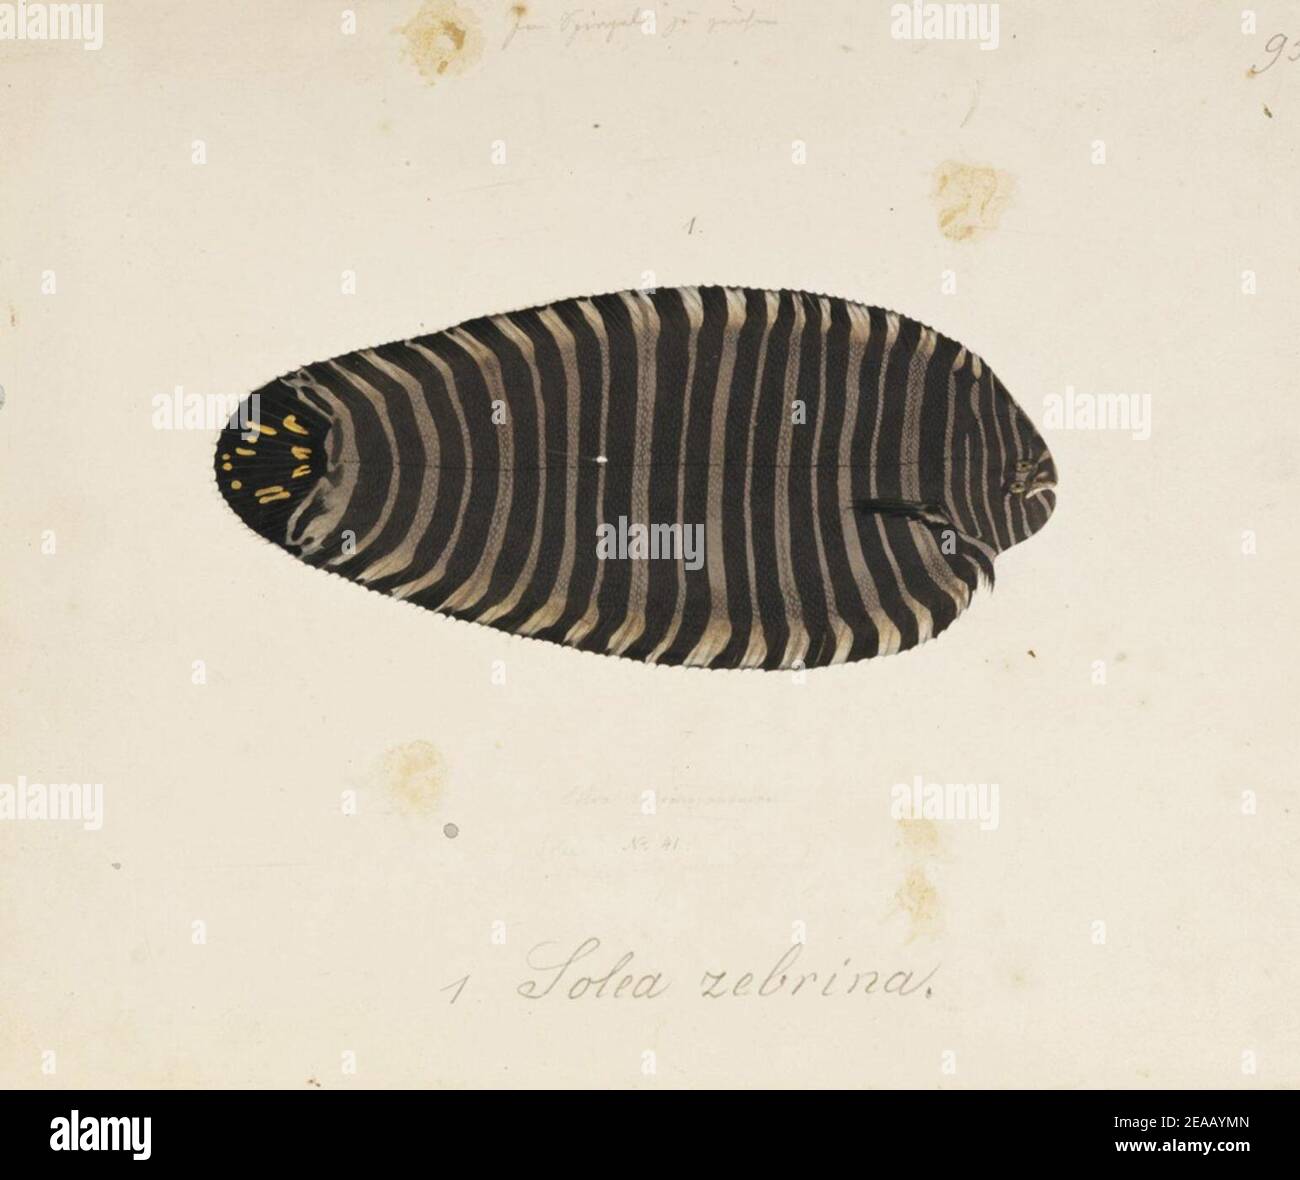 .102 - Zebrias zebra (Bloch and Schneider) - Kawahara Keiga - 1823 - 1829 - pencil drawing - water colour. Stock Photo